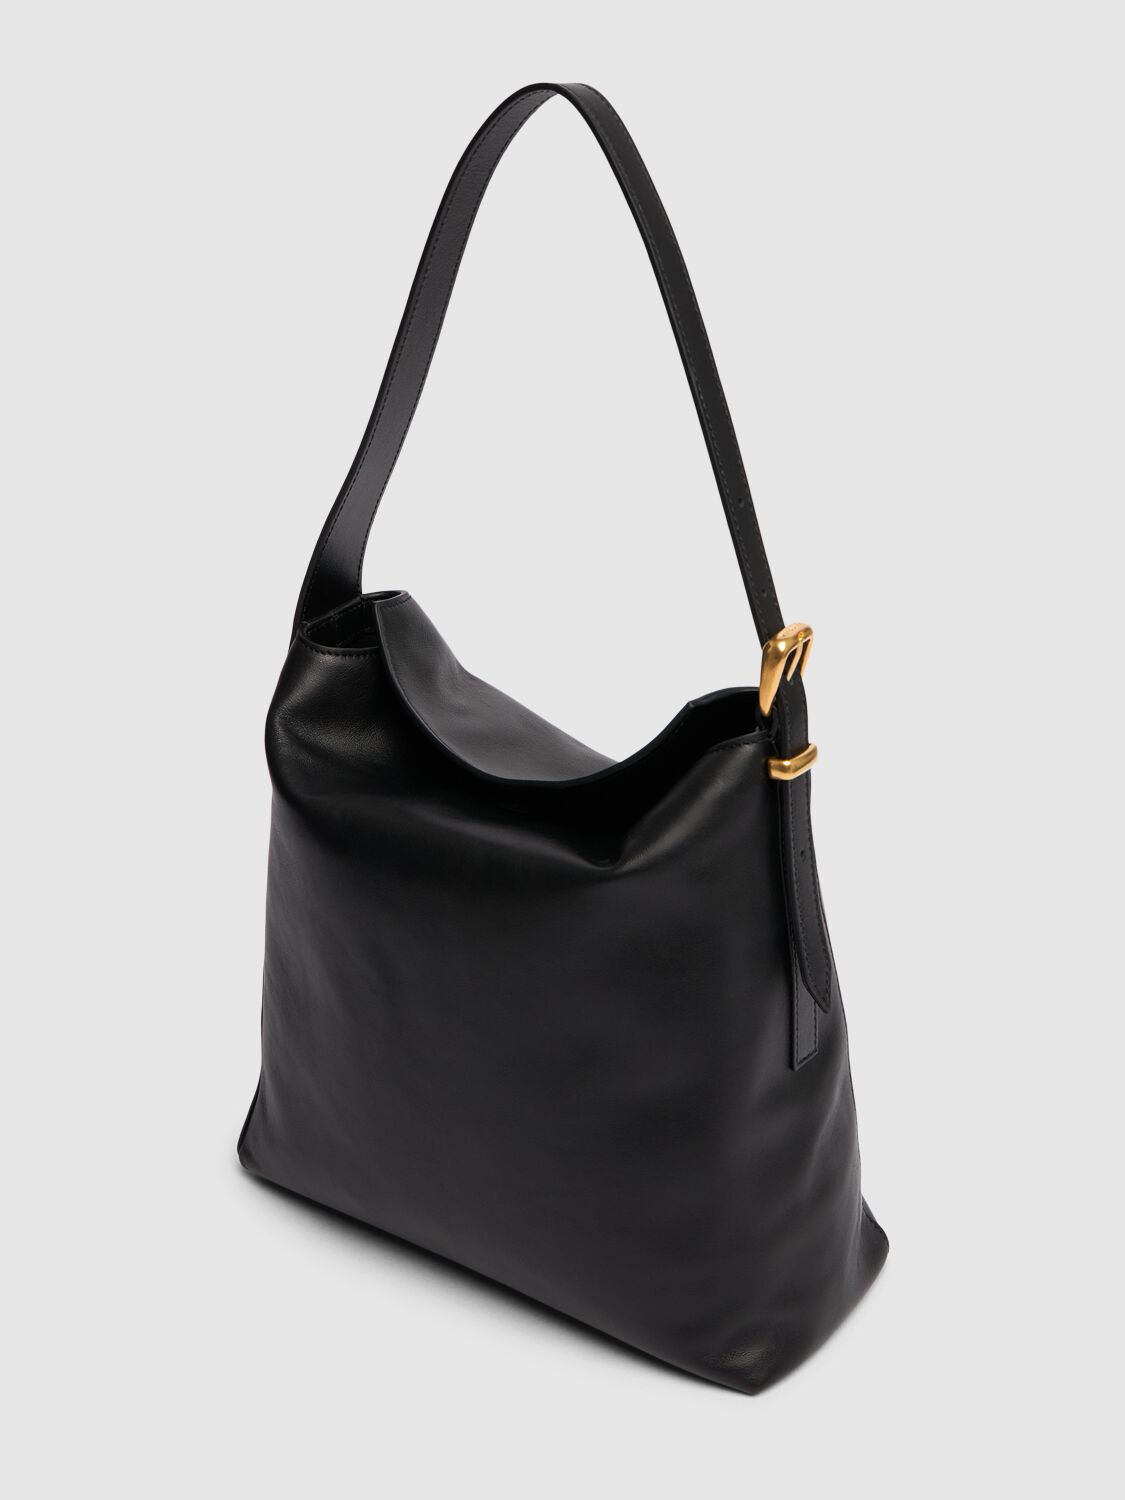 Shop Wandler Marli Leather Shoulder Bag In Black